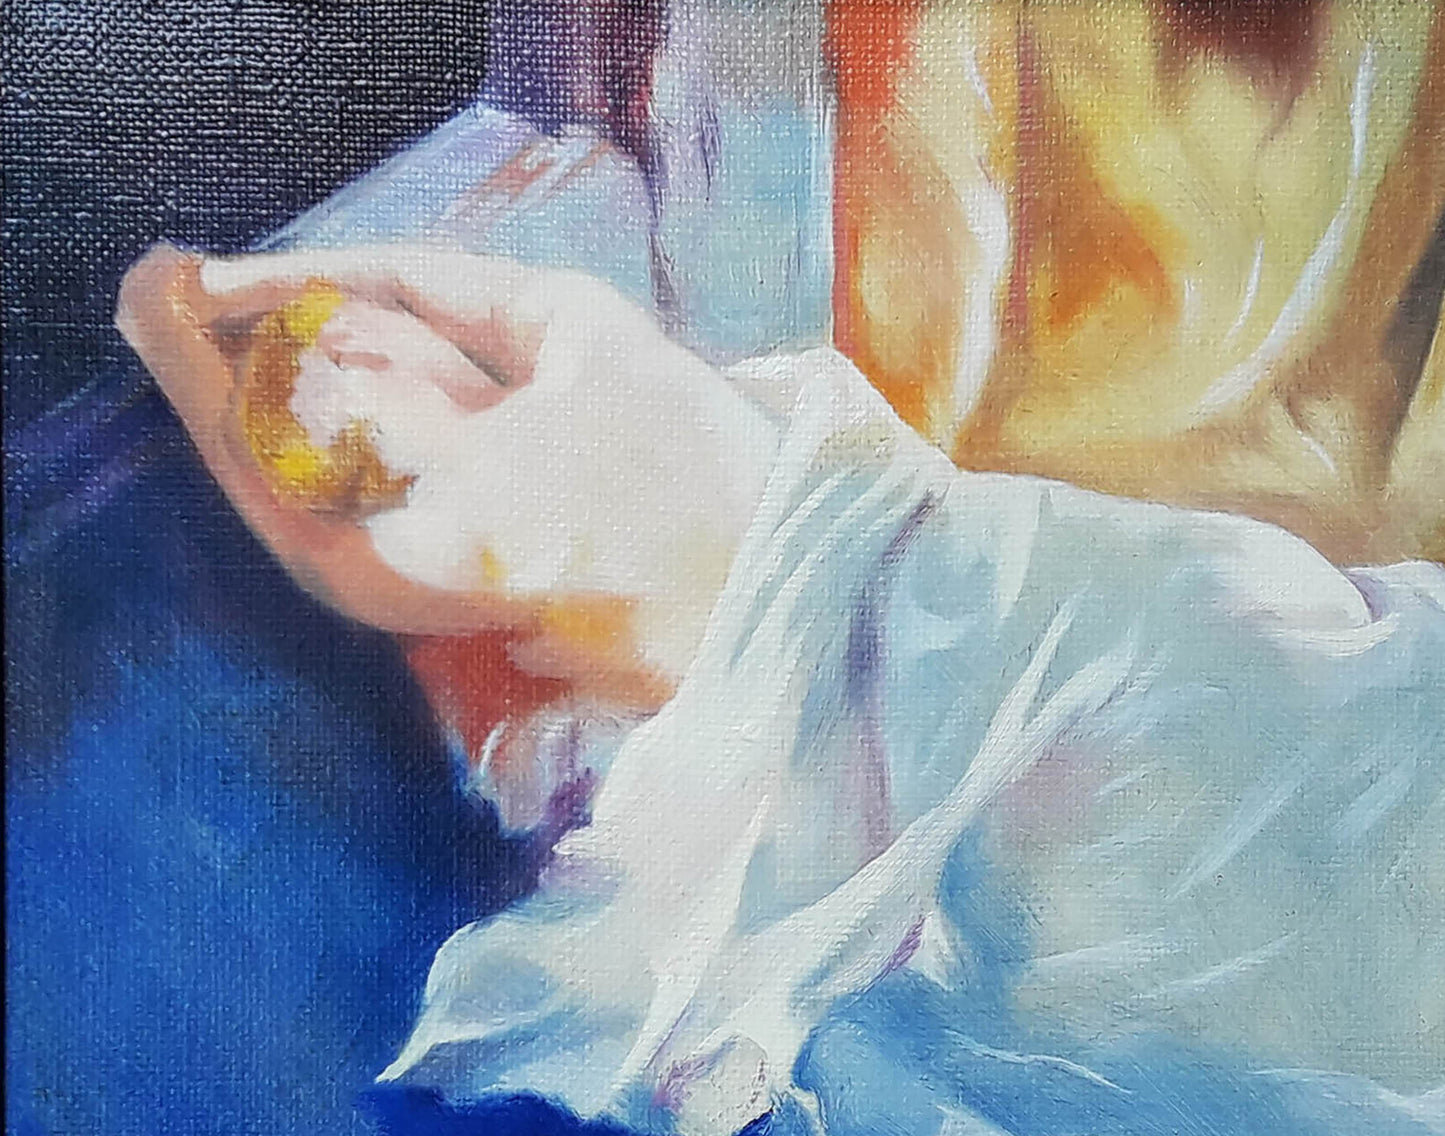 Oil painting Portrait of a sleeping girl Vasily Korkishko